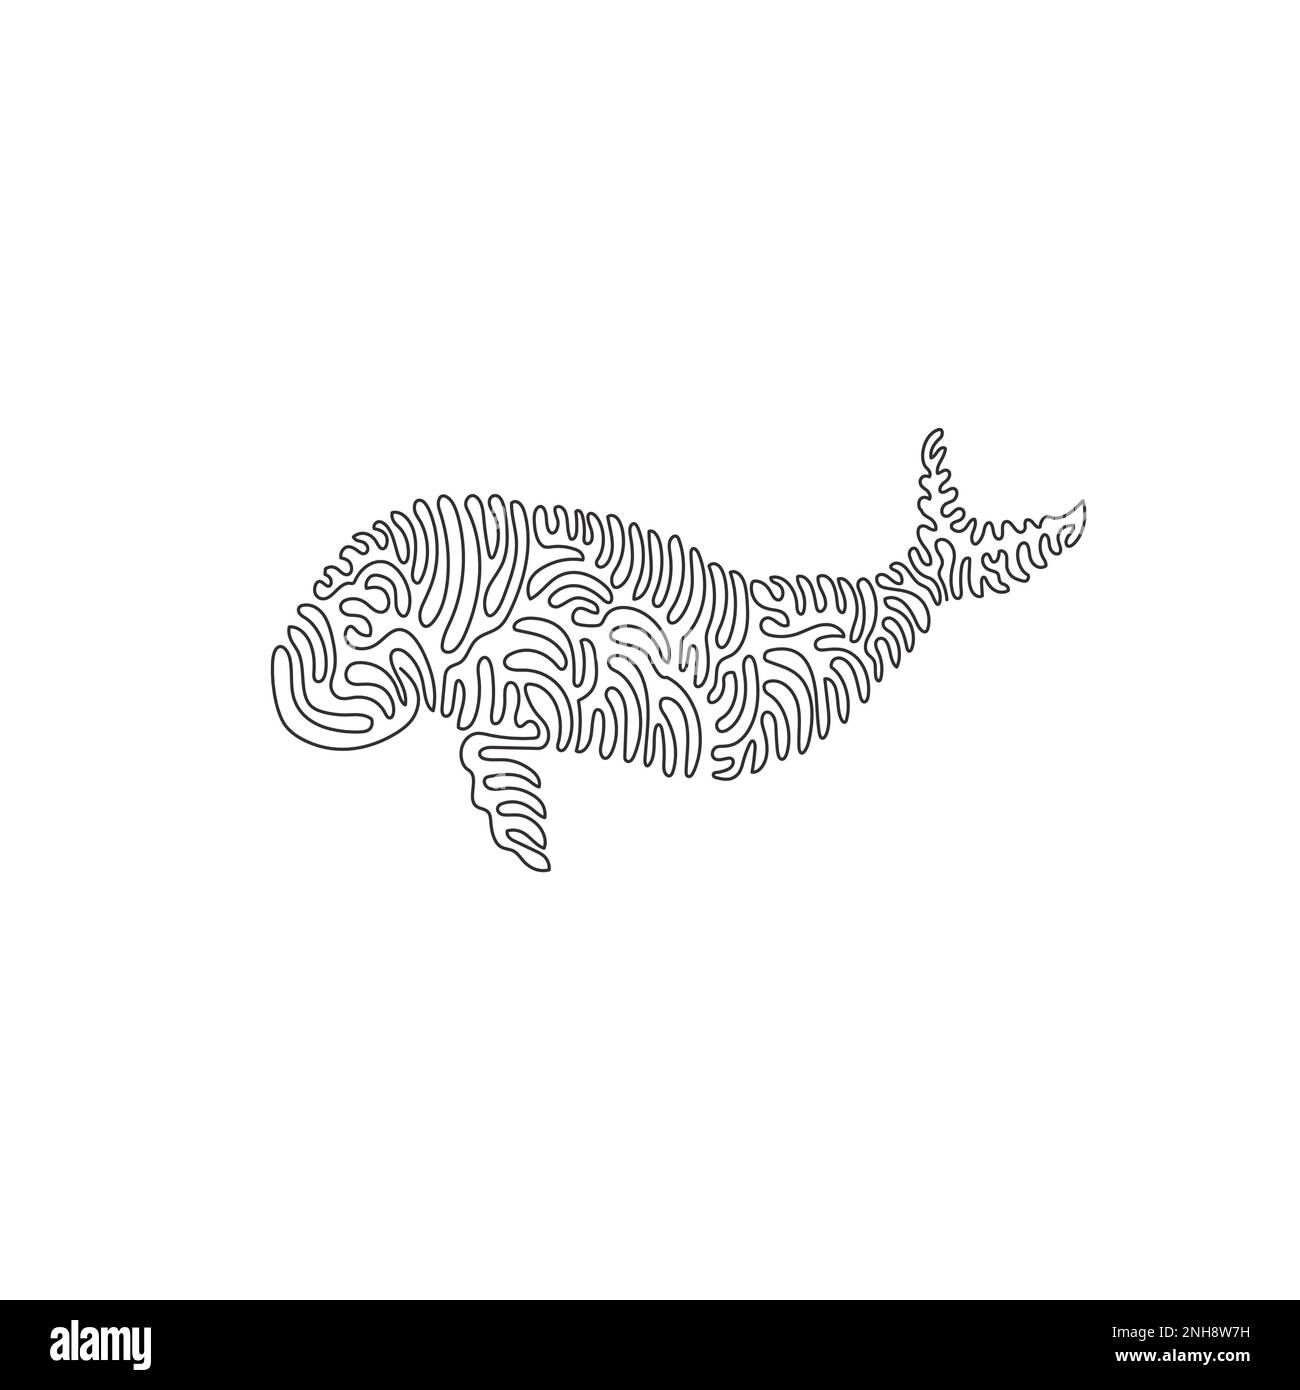 Curva continua disegno a linea di adorabile arte astratta dugongo L'illustrazione del vettore di tratto modificabile a linea singola del dugongo non ha pinna dorsale Illustrazione Vettoriale